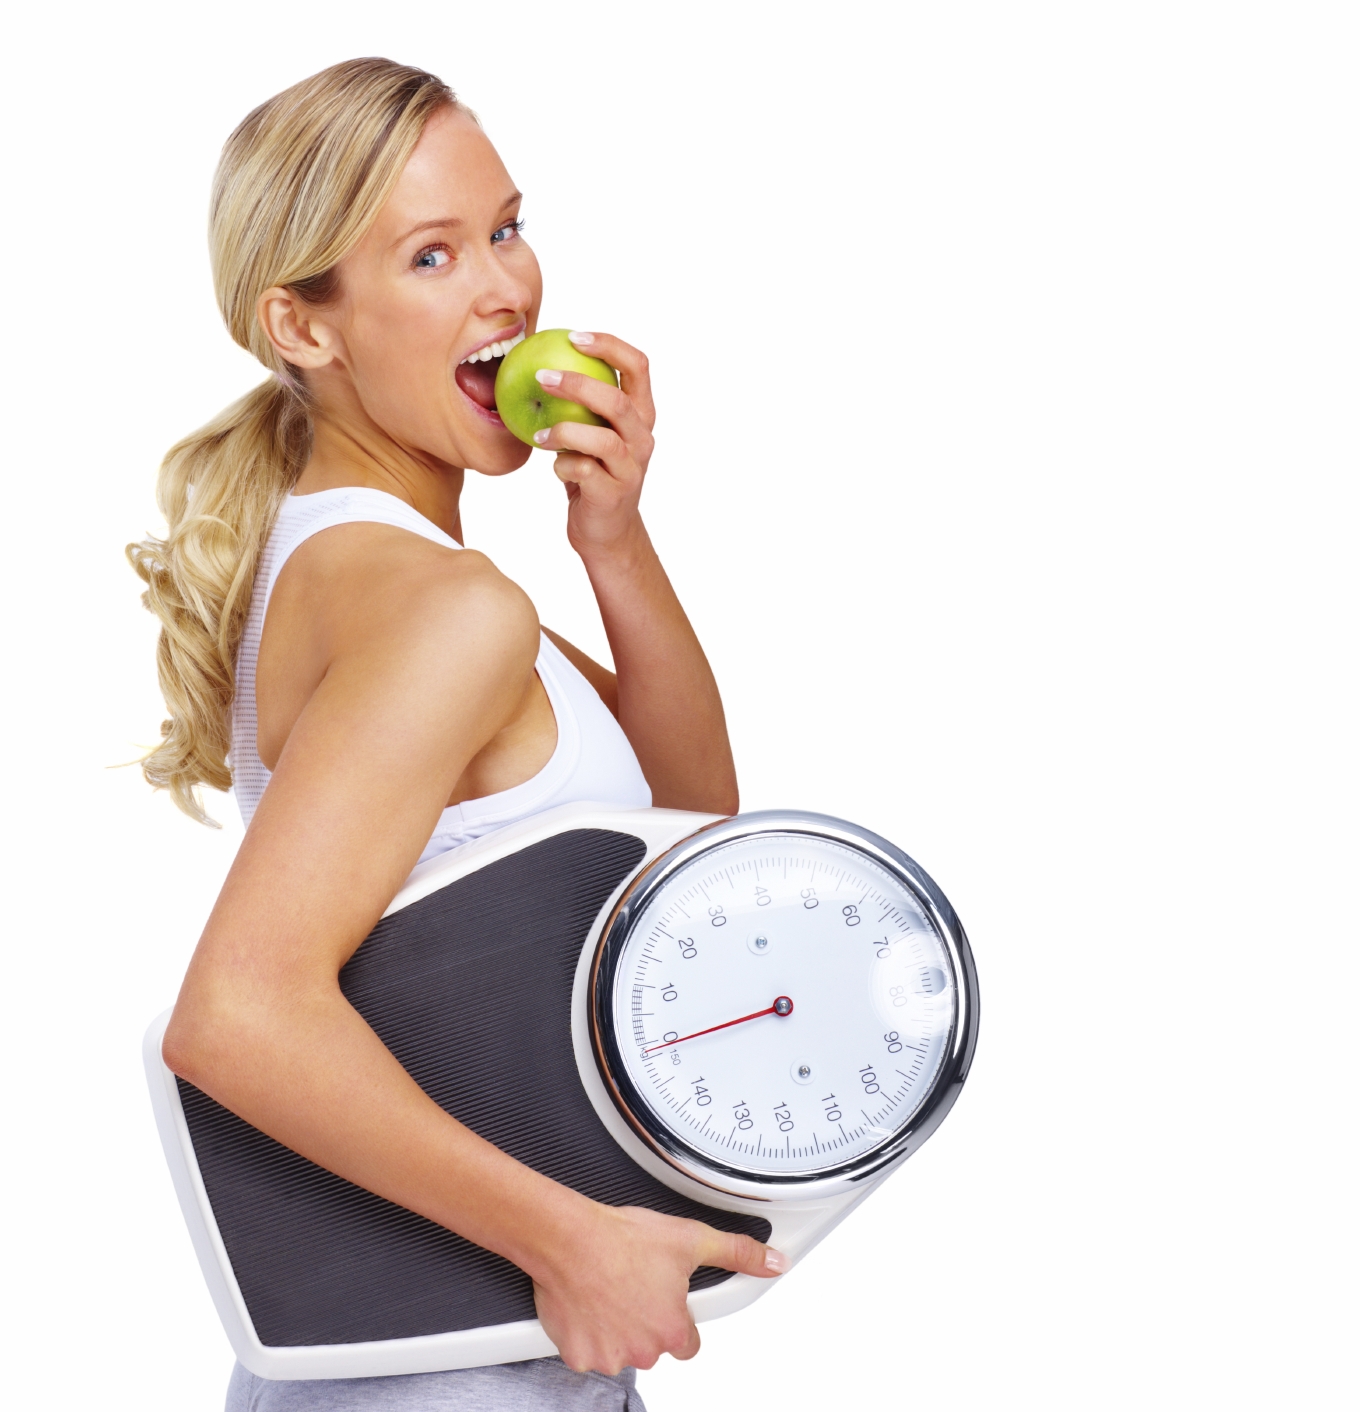 Mantenere il peso forma dopo la dieta